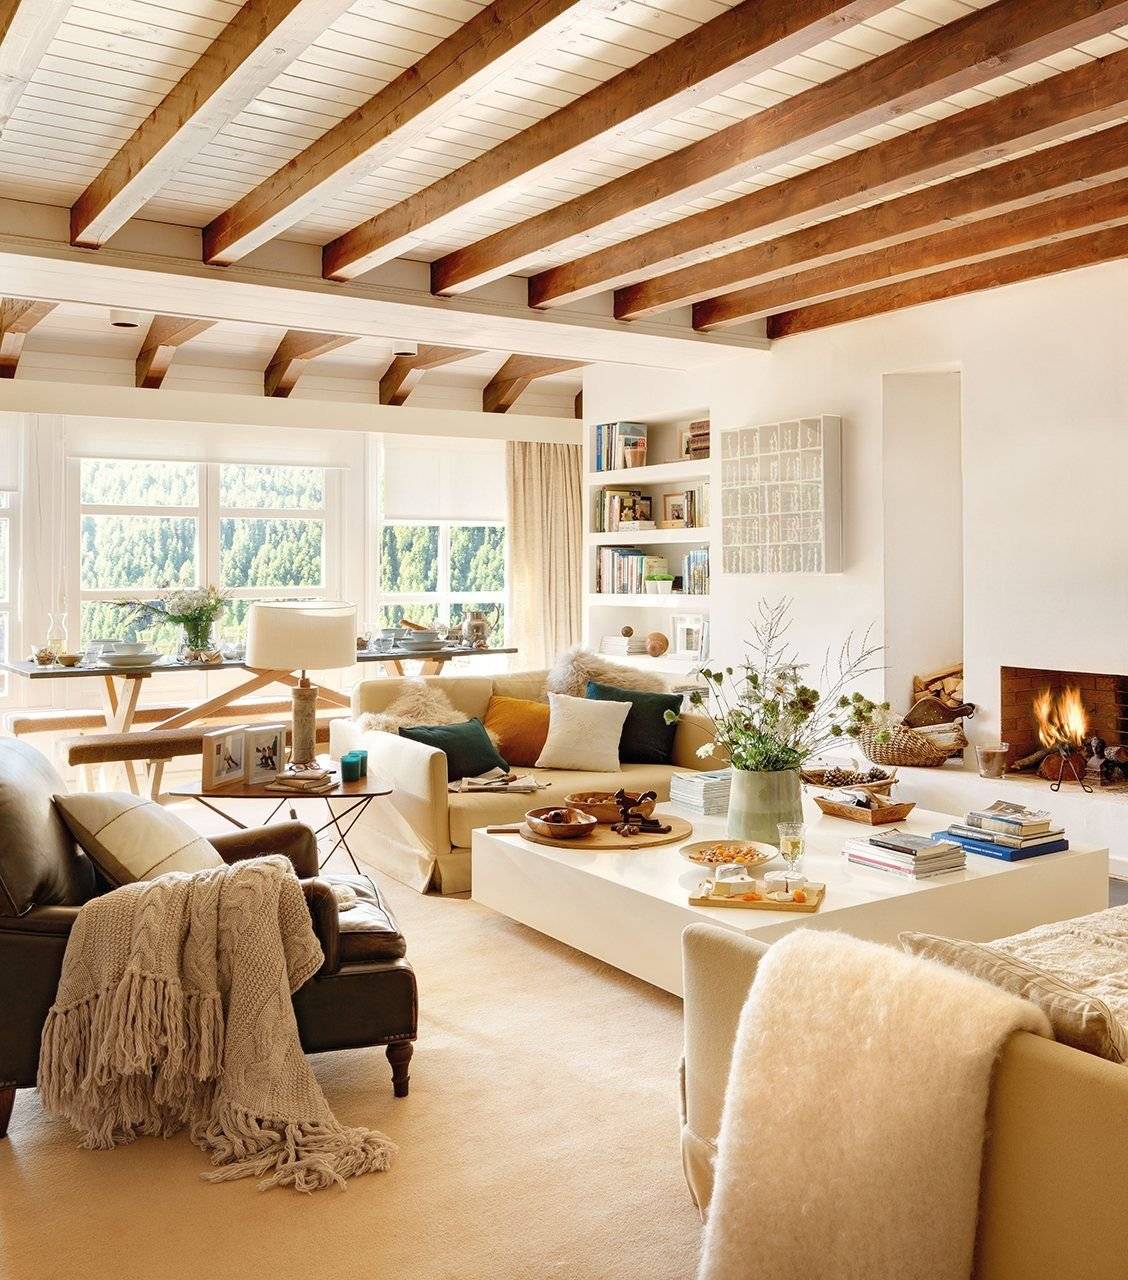 Потолок с балками в деревянном доме в интерьере: как обыграть чтобы казался выше, дизайн фото